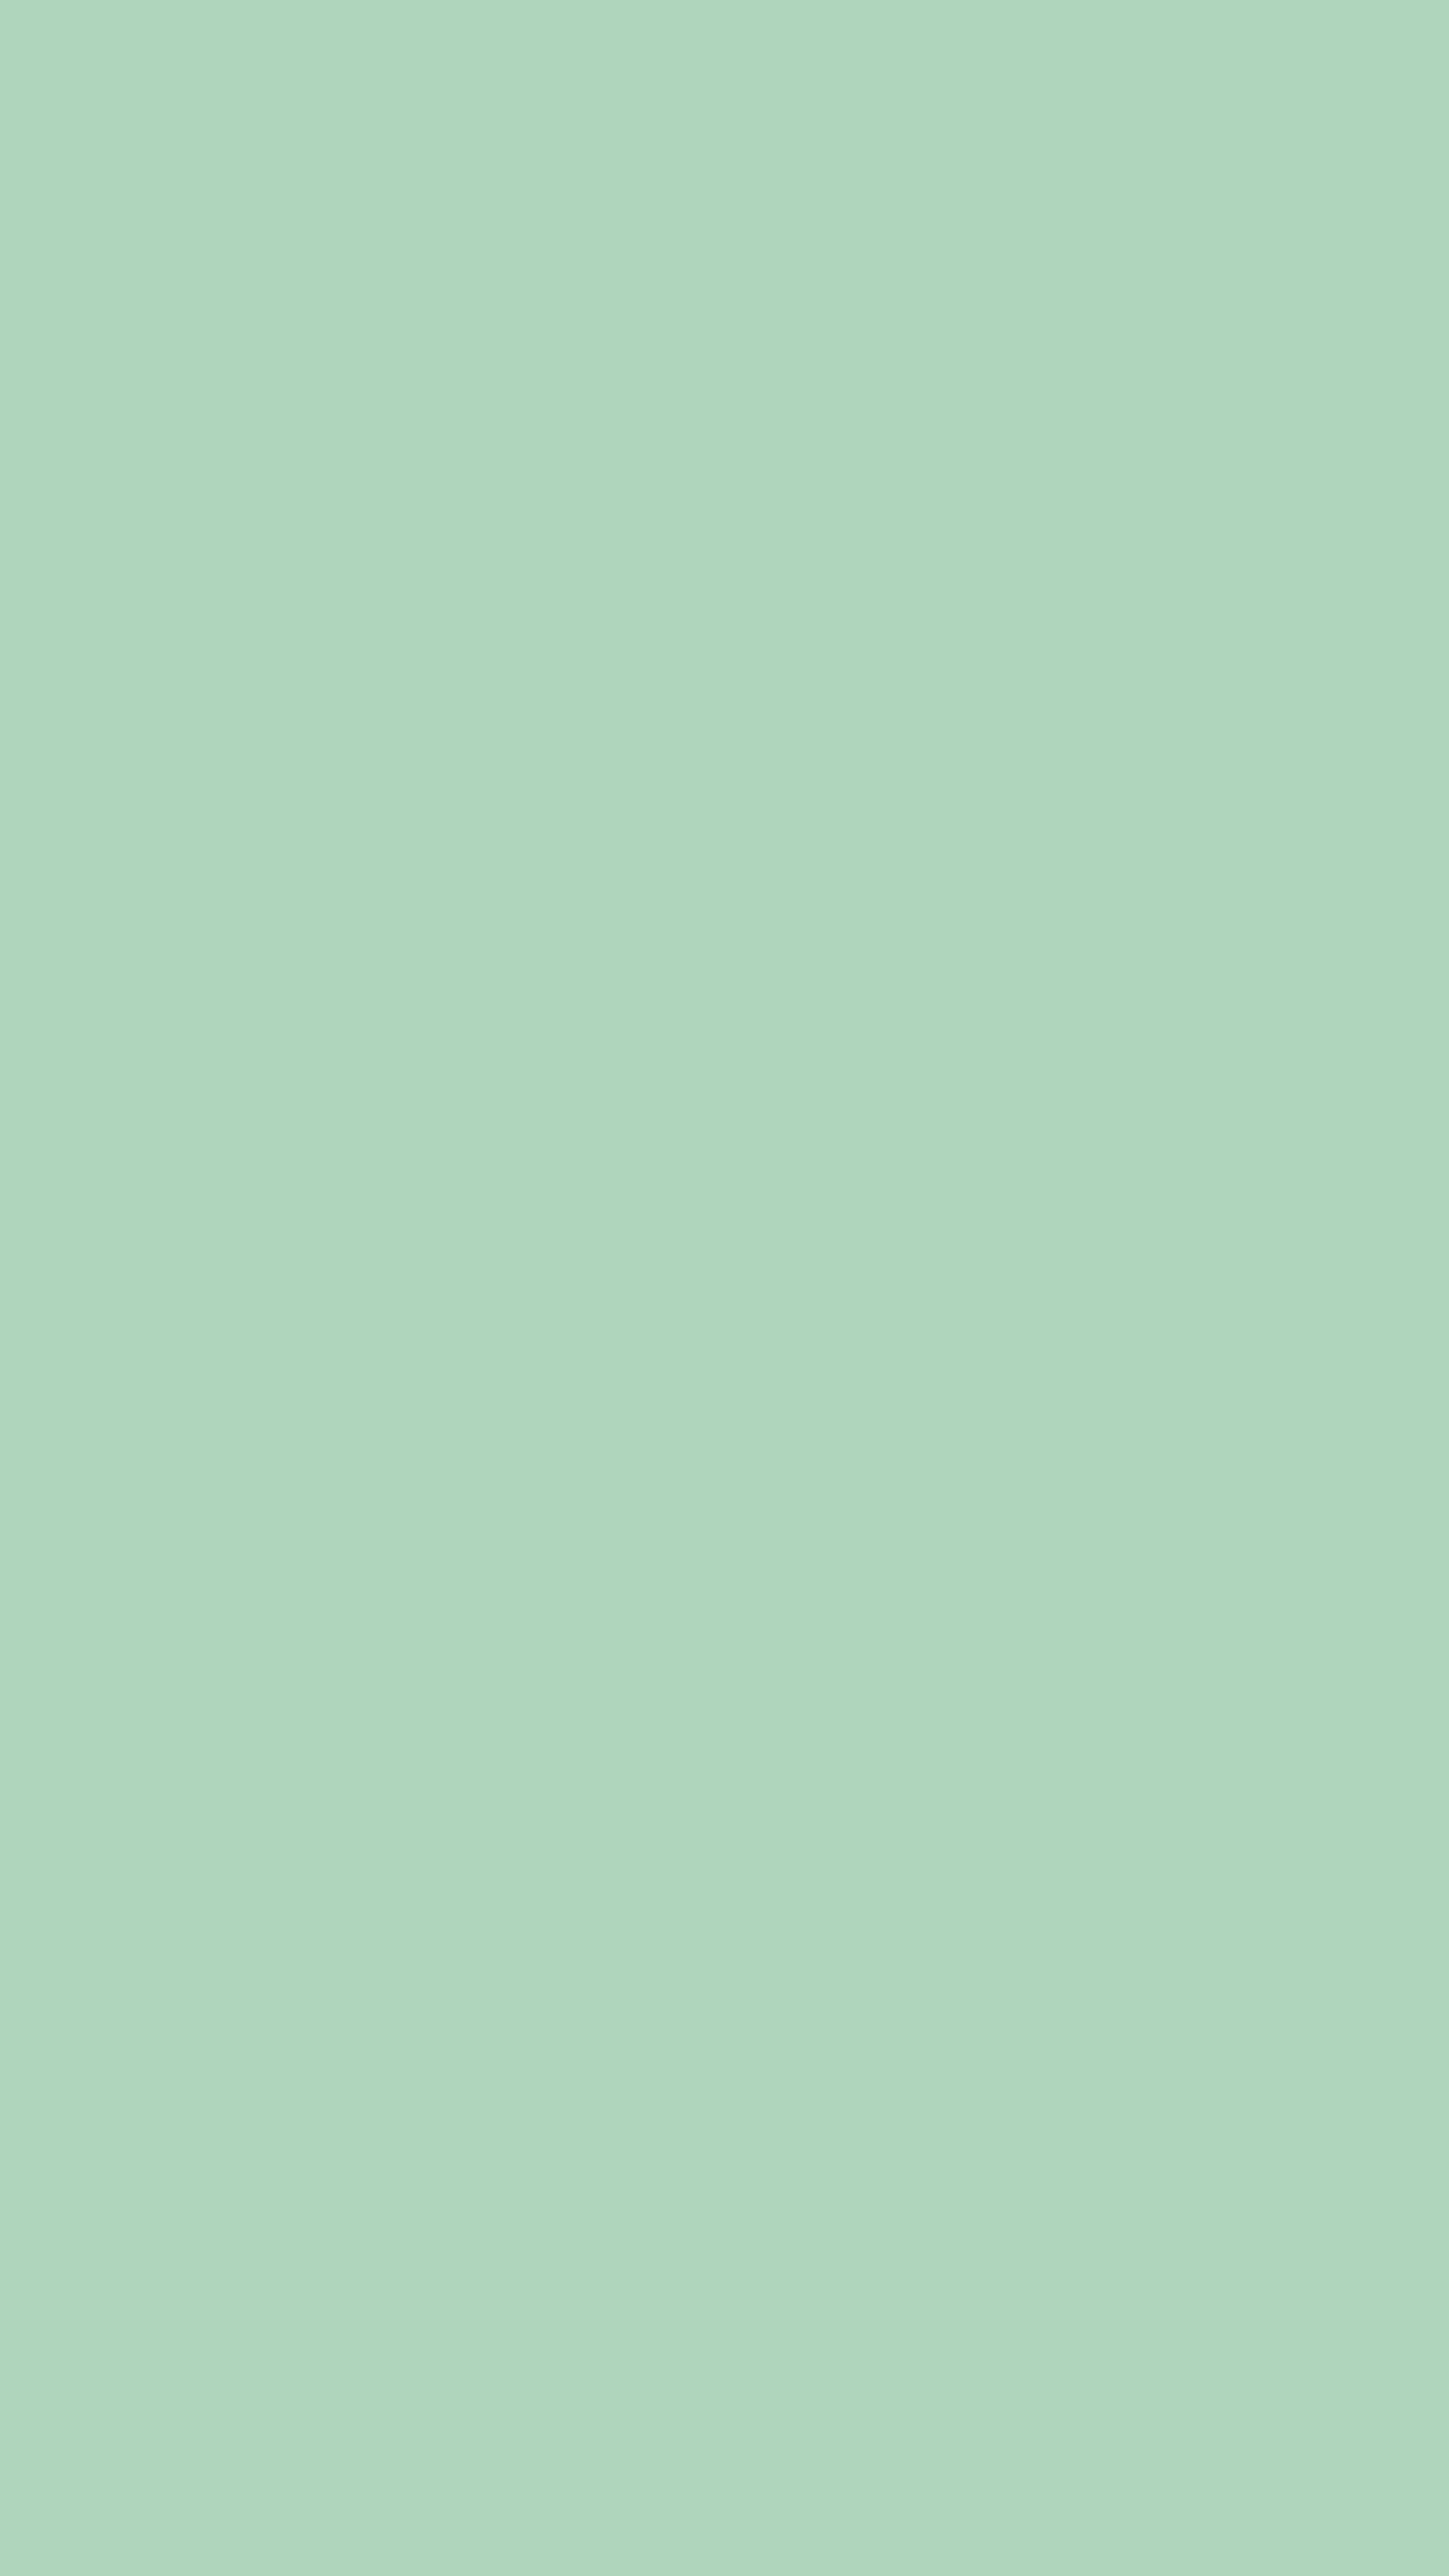 Soft Green Minimalist Background壁紙[54786b8ccdec4d0d8fdb]